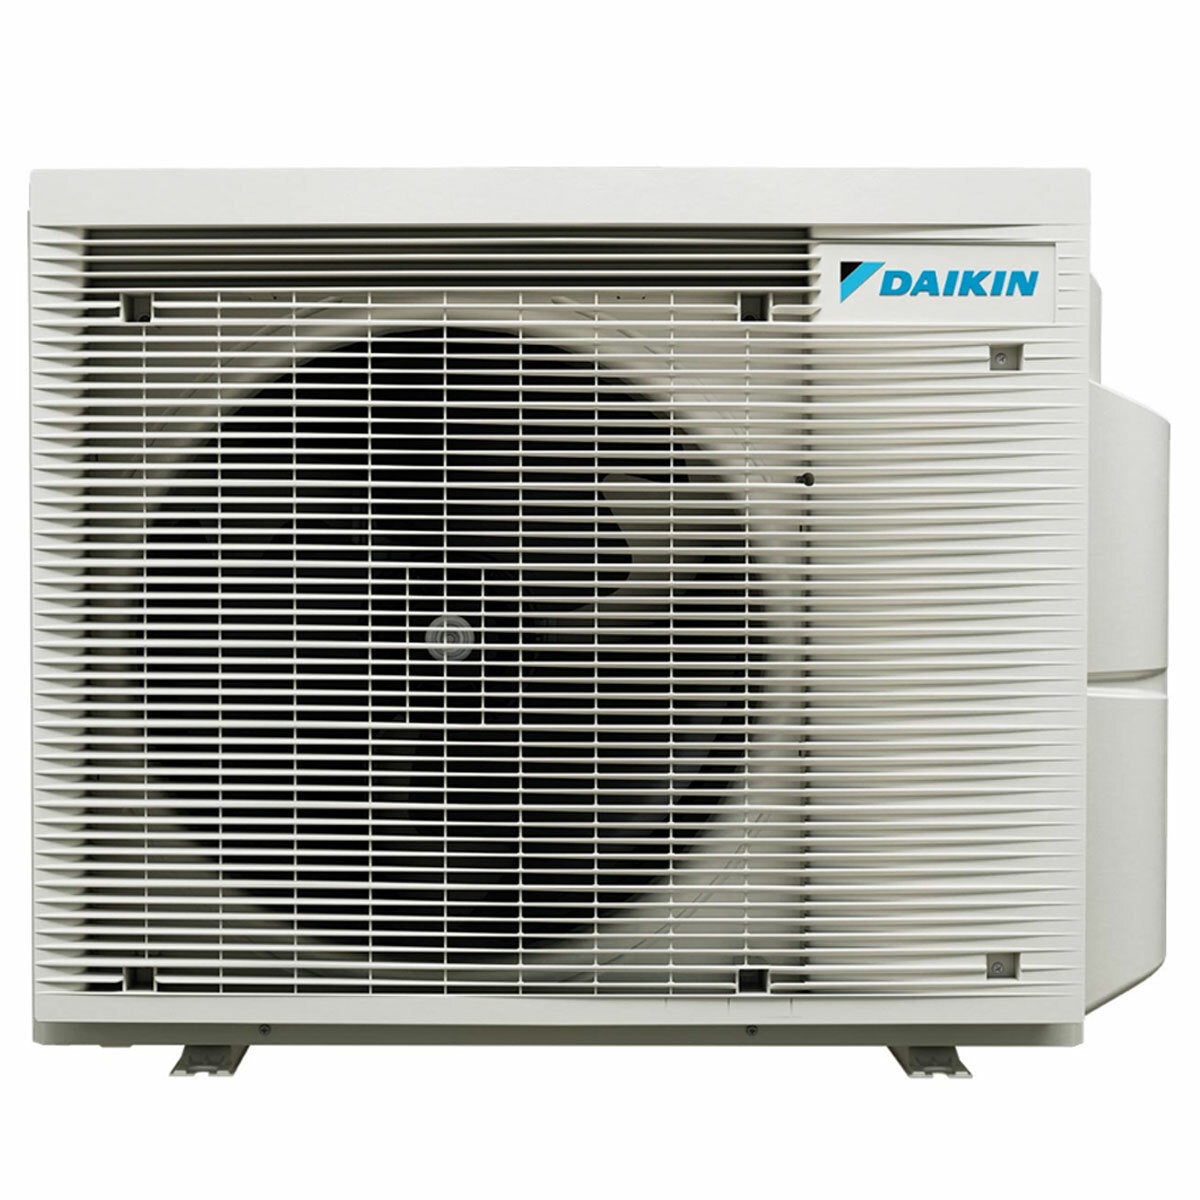 Daikin Emura 3 trial split air conditioner 7000+7000+18000 BTU inverter A+ wifi outdoor unit 6.8 kW White